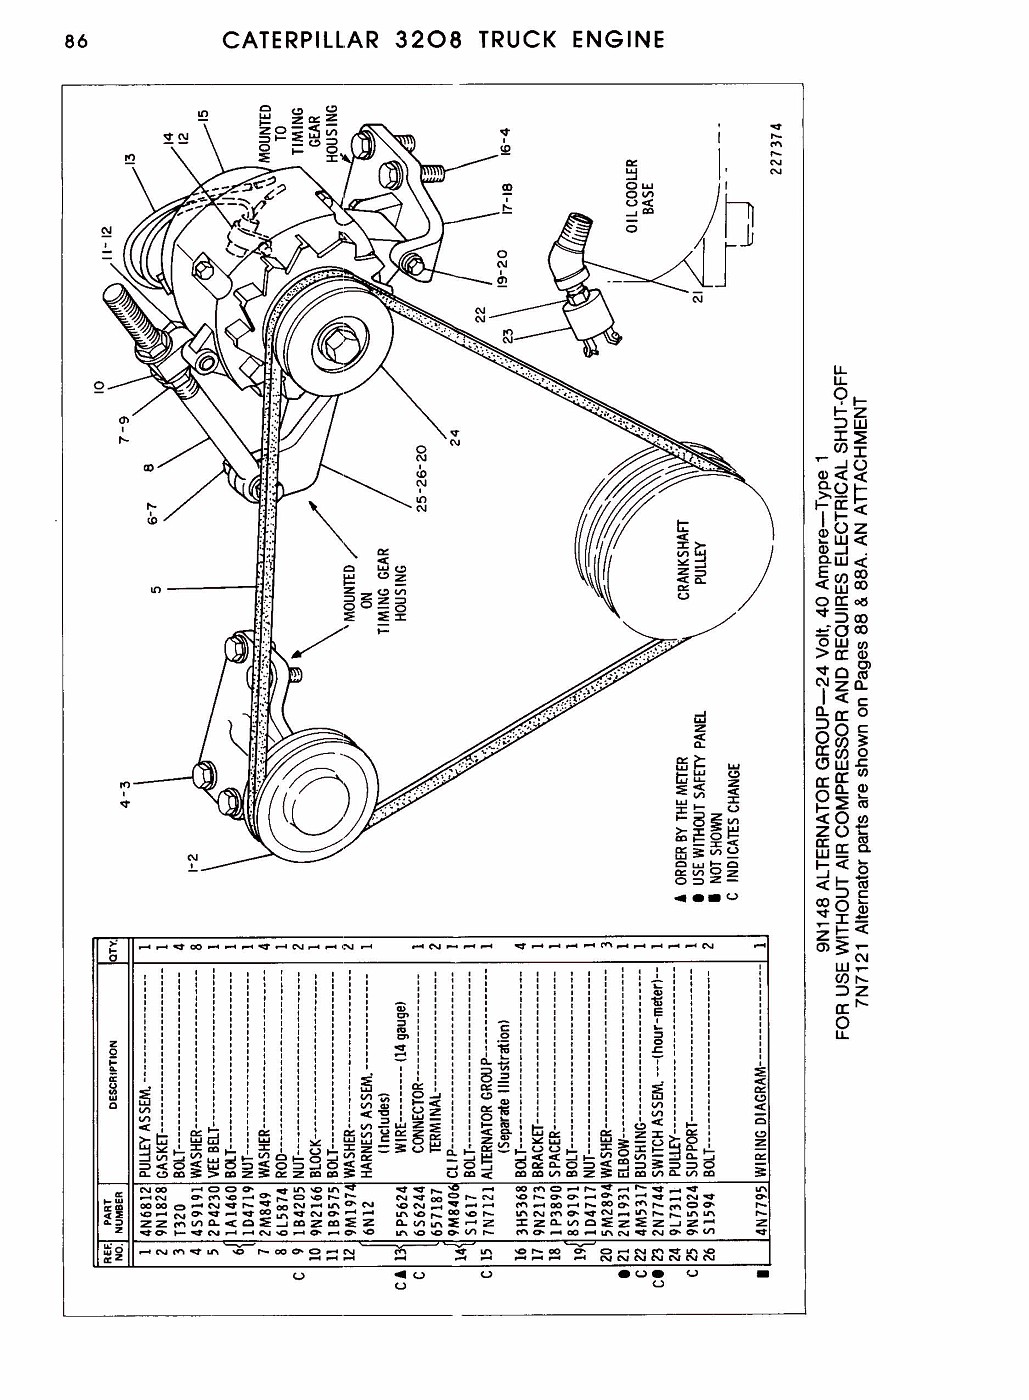 Cat 3208 Wiring Diagram Wiring Diagrams Schematics